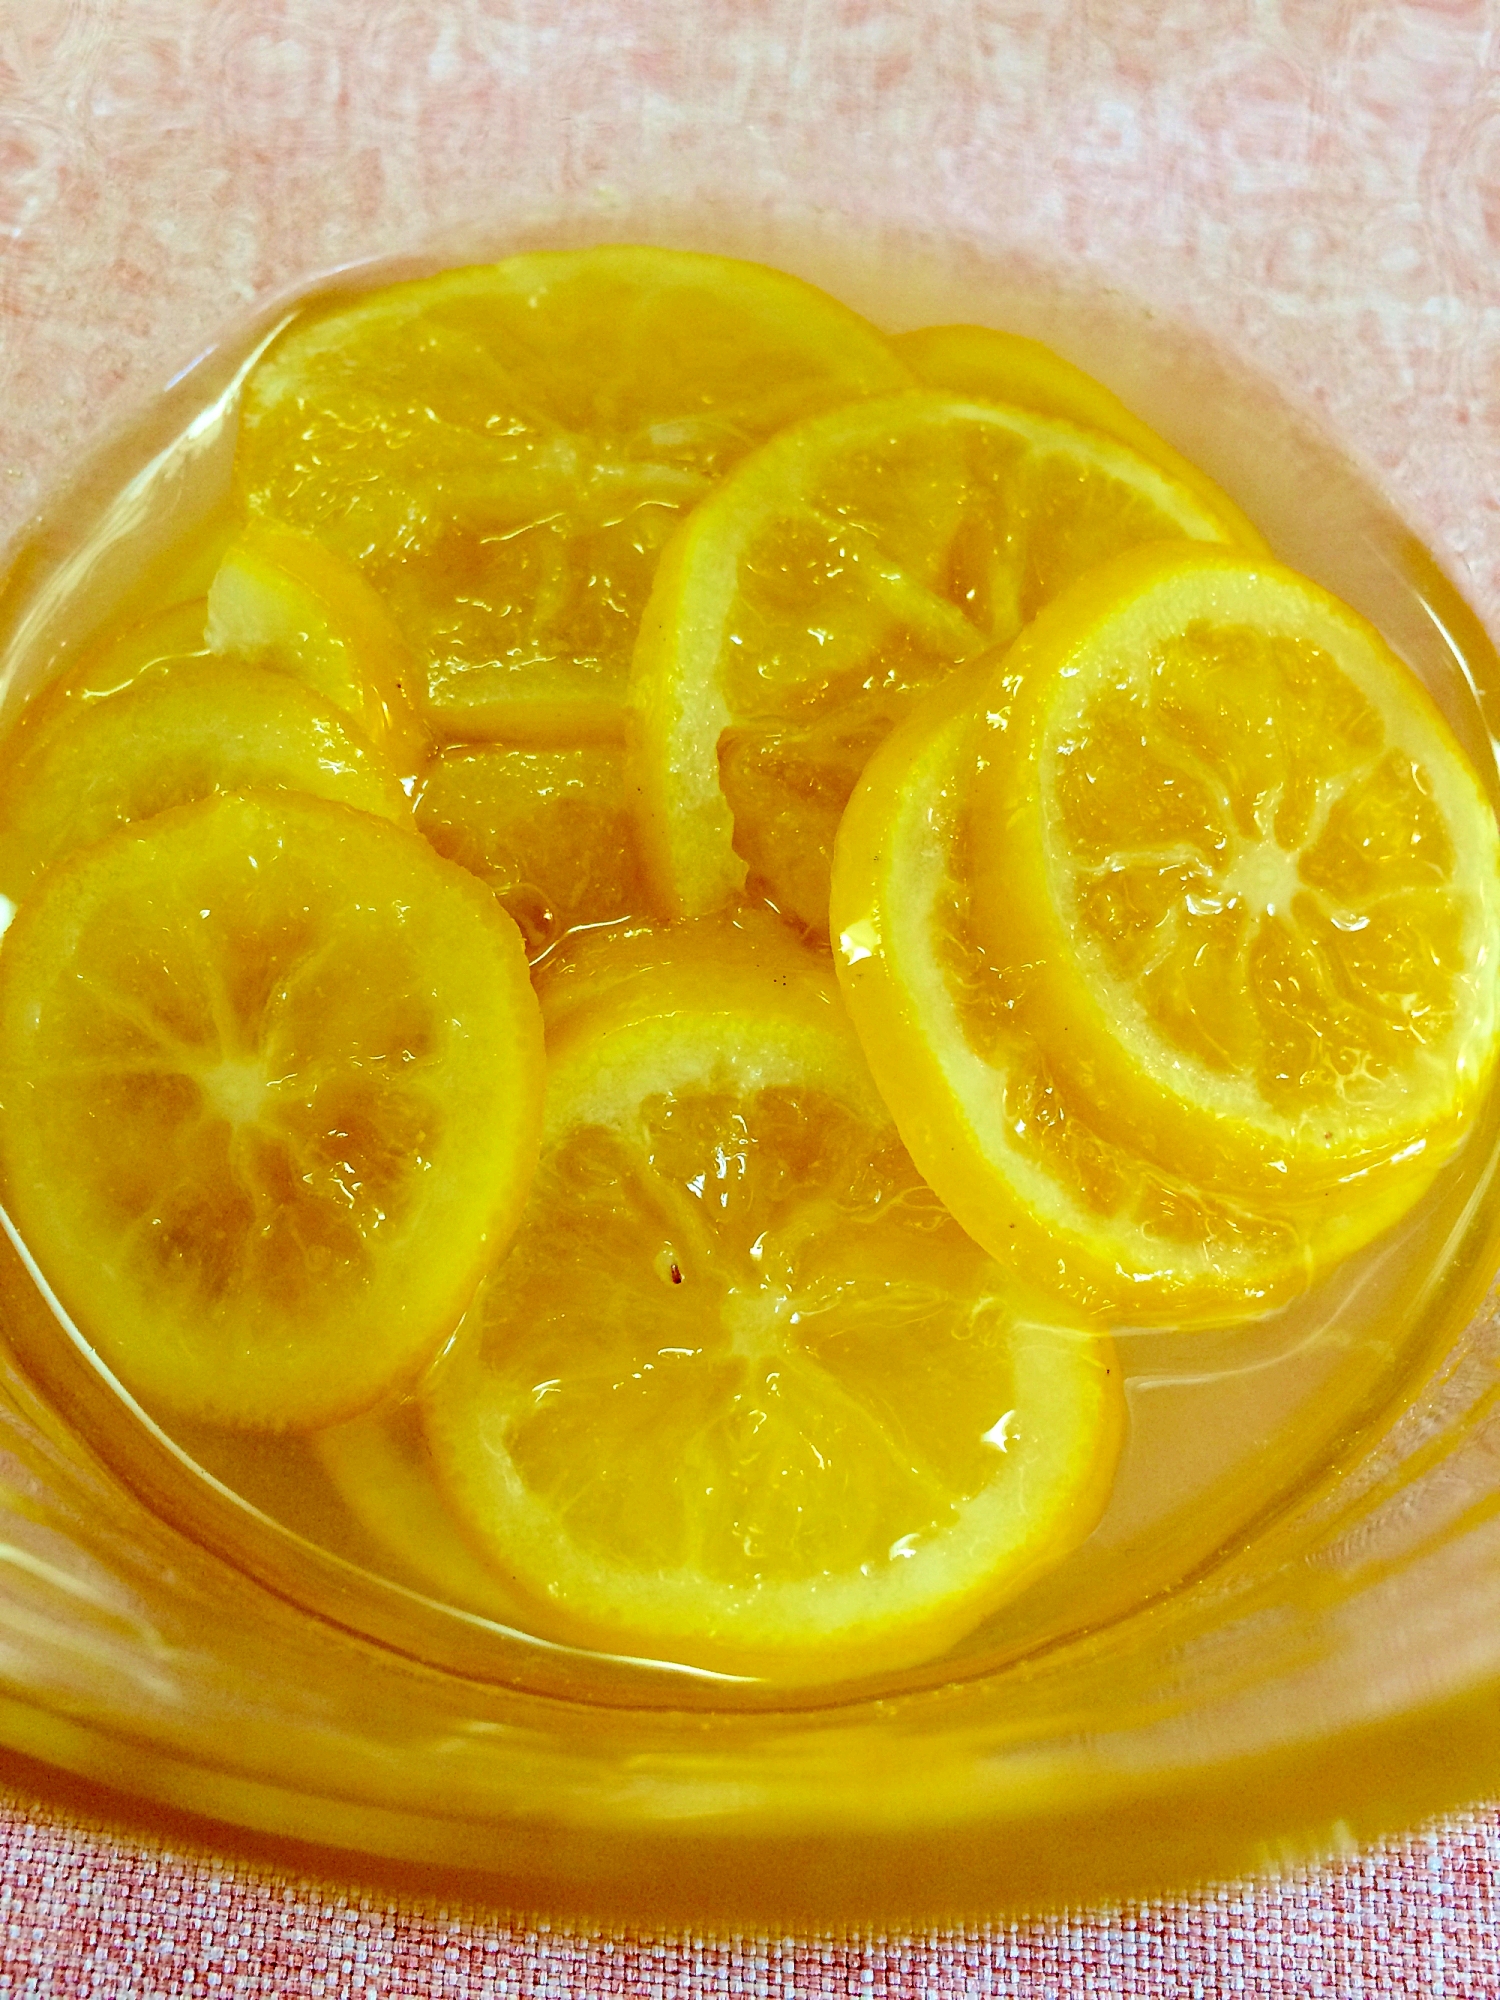 レンジで時短 すぐ食べられるレモンのはちみつ漬け レシピ 作り方 By Mintaropon 楽天レシピ